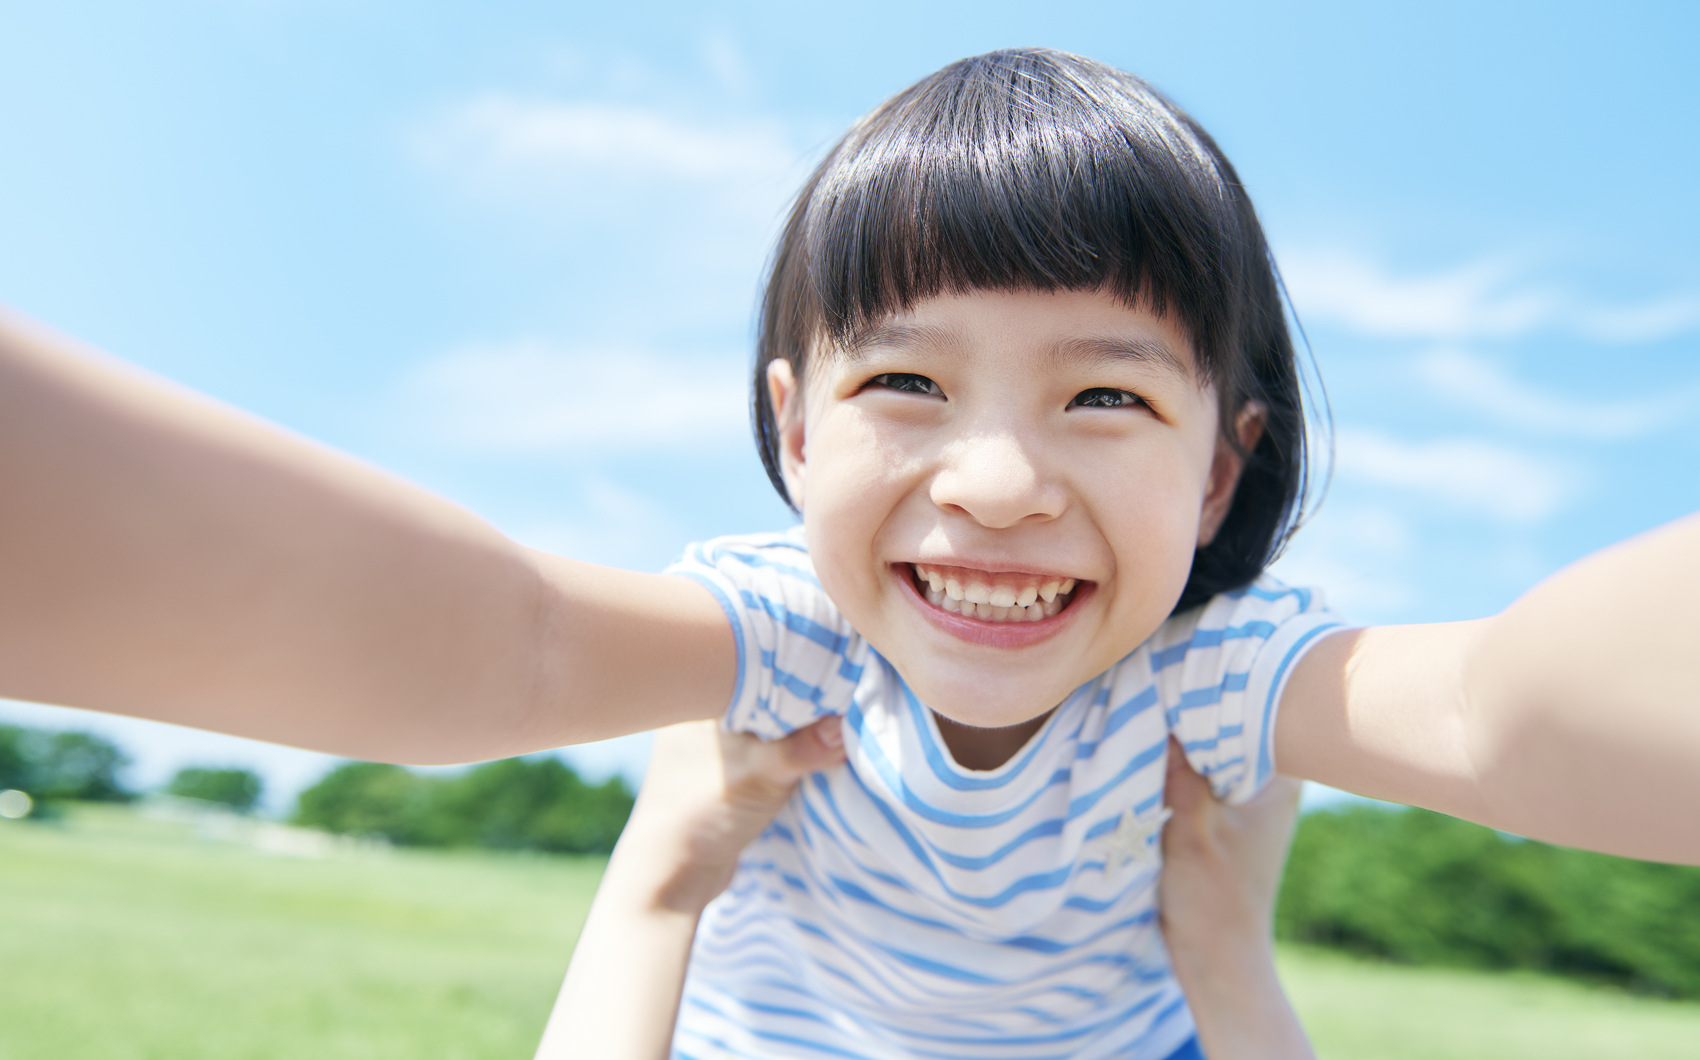 太陽の恵はお子さんの笑顔と健康を守る「SUN & SMILES ACTION」